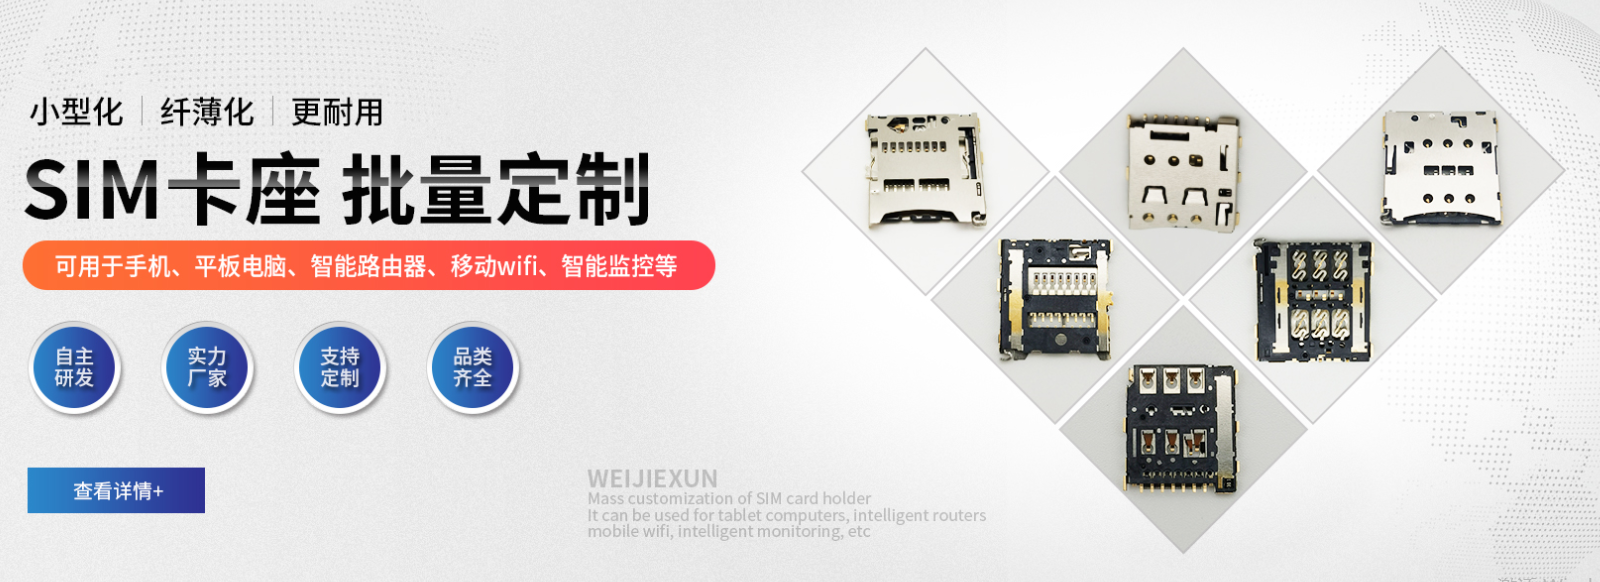 维杰讯SIM卡座 在华为5G移动路由器的应用+[维杰电子】.png